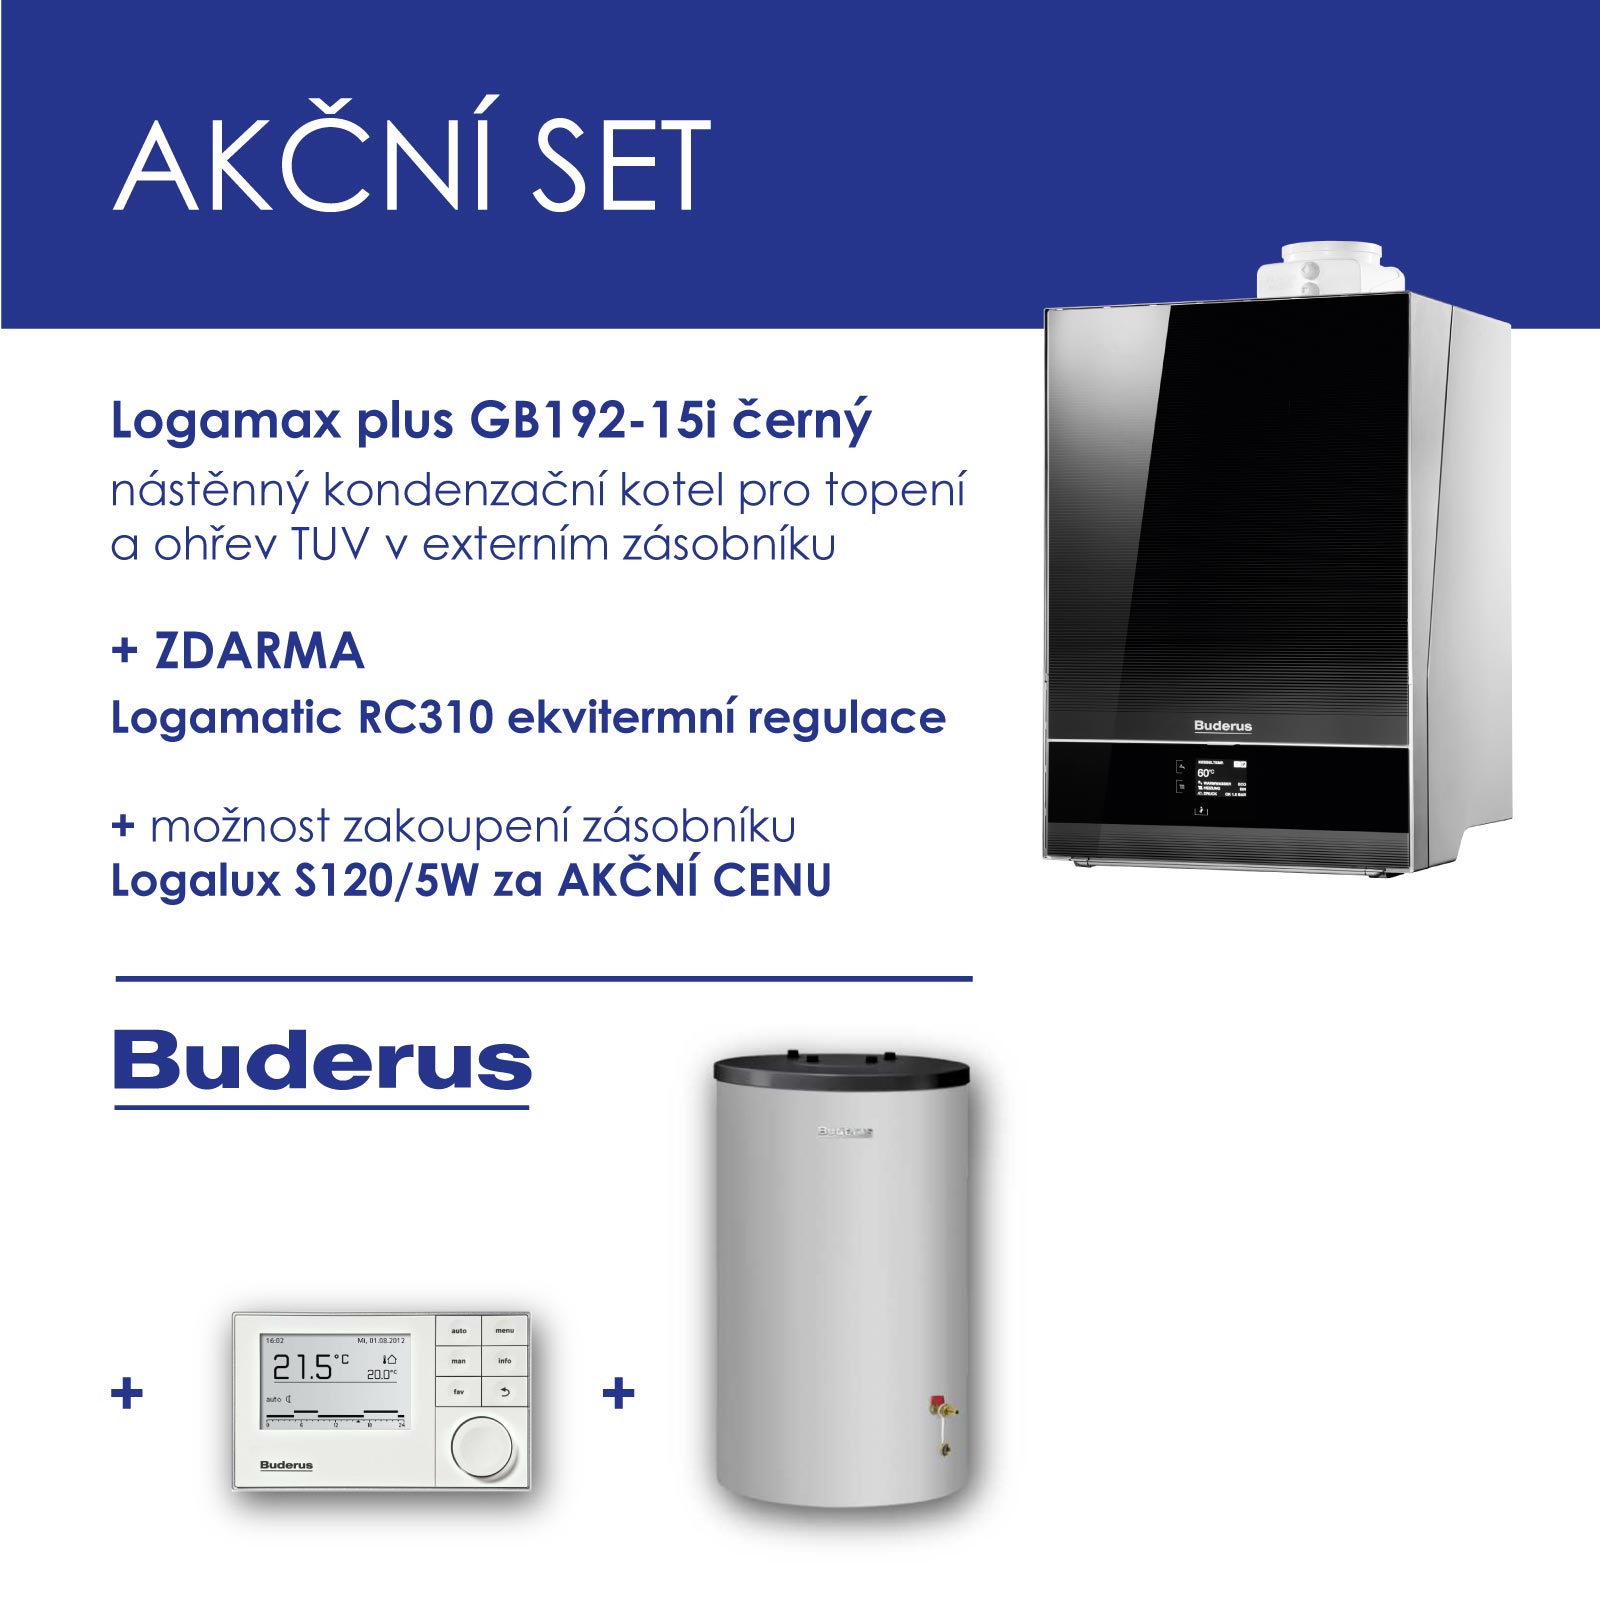 BUDERUS GB 192-15i černý , nástěnný kondenzační kotel, topení+RC 310 ekvitermní regulátor